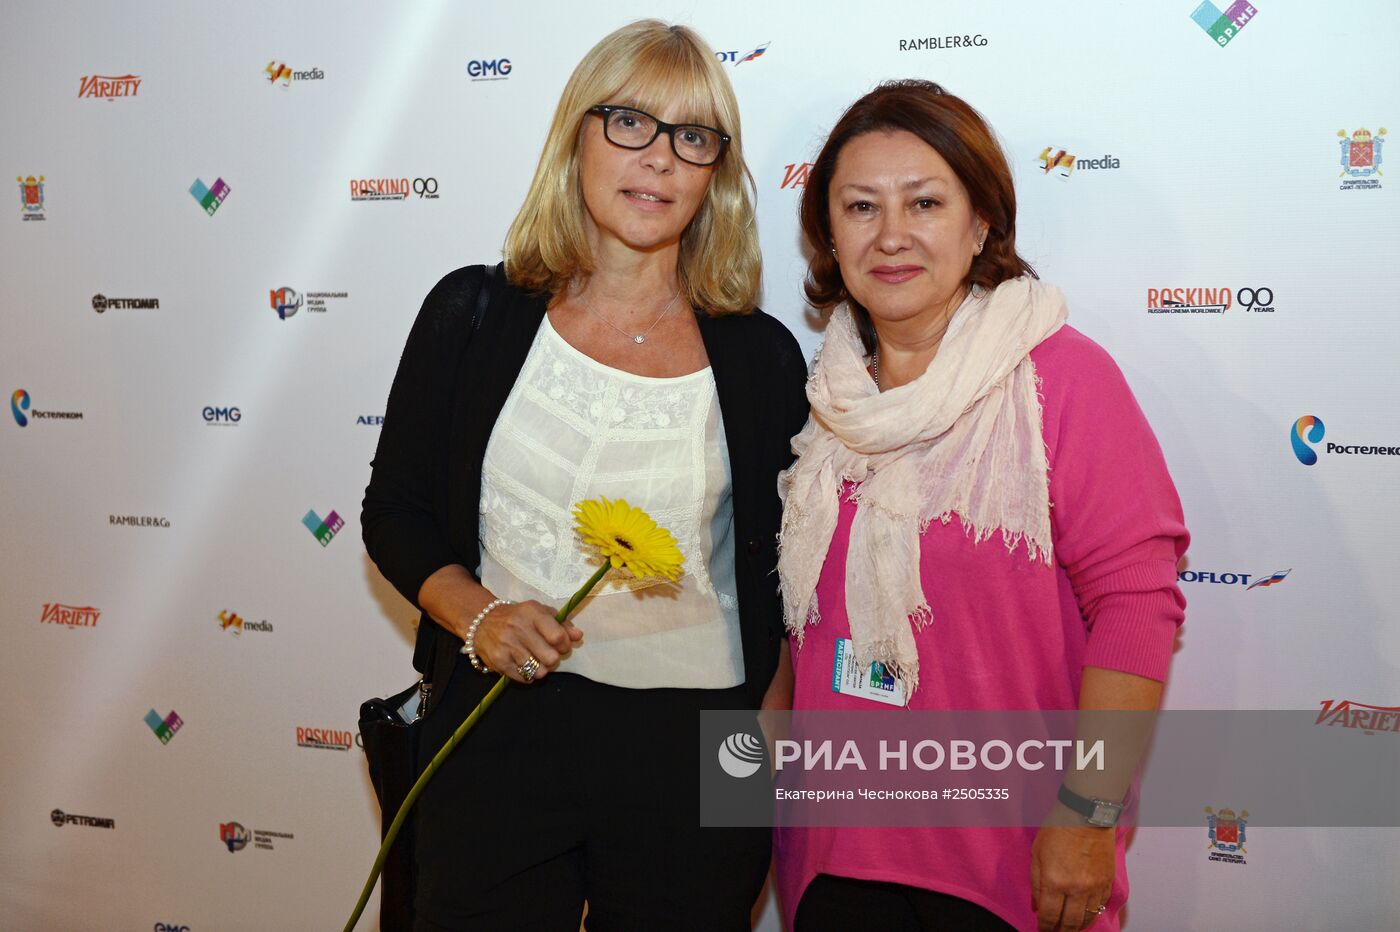 Международный медиа форум в Санкт Петербурге